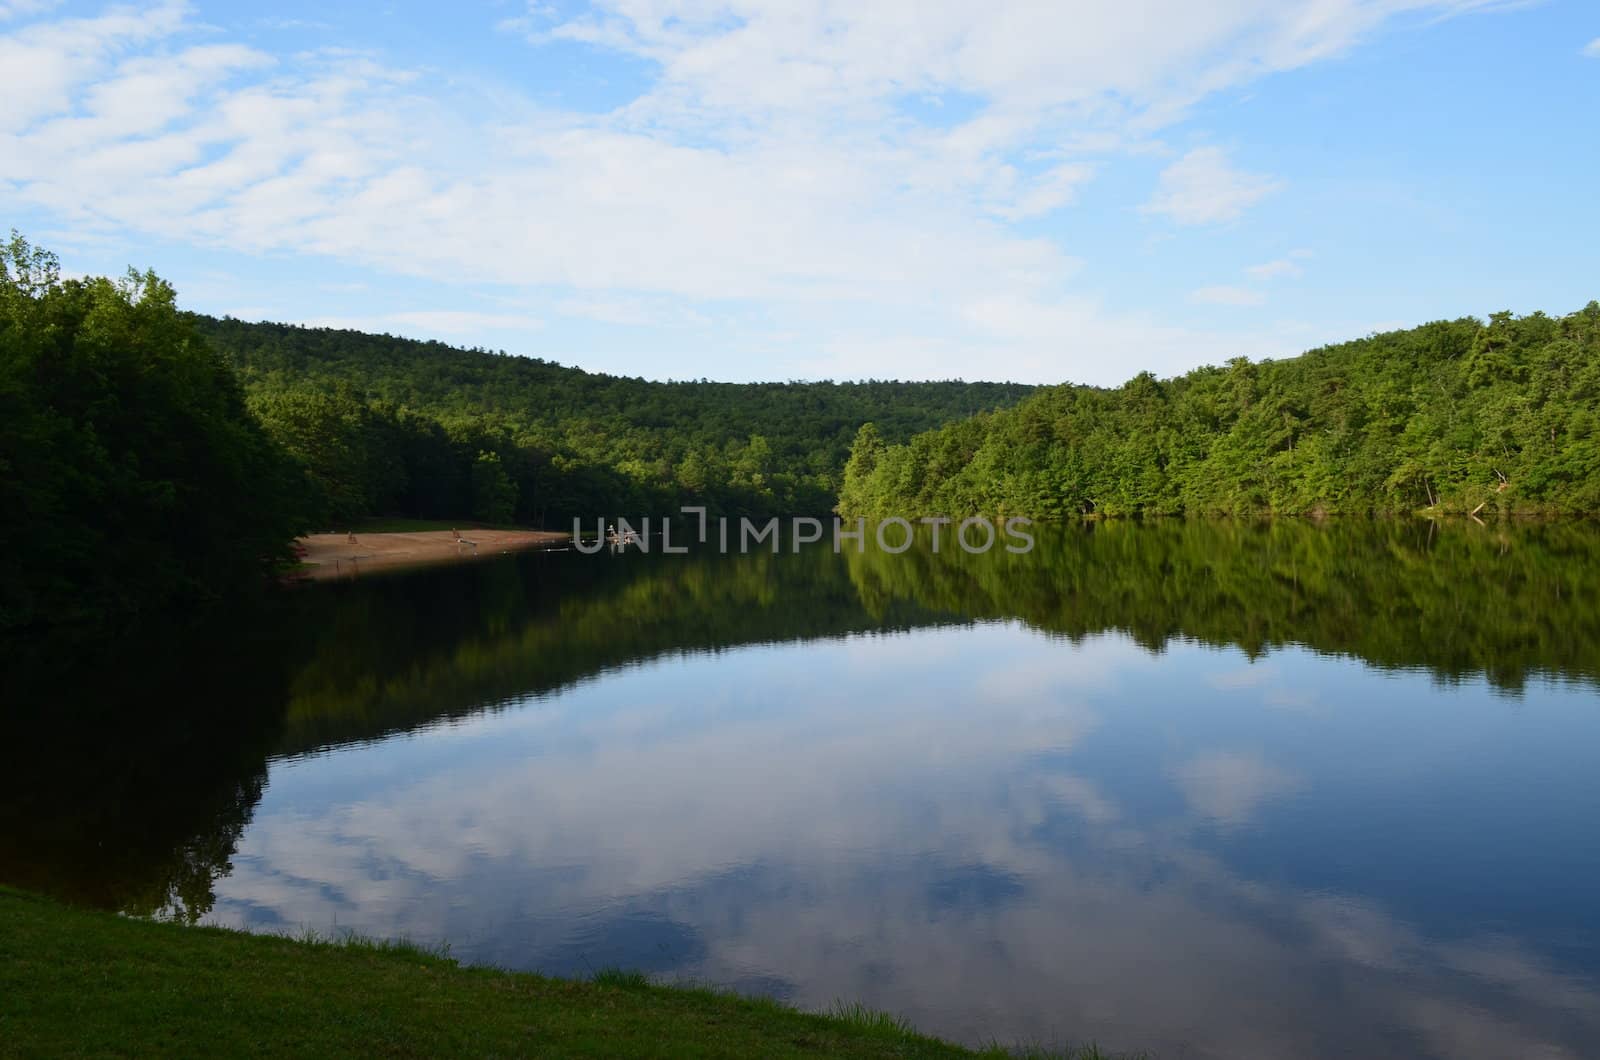 A small lake at Hanging Rock State Park in North Carolina